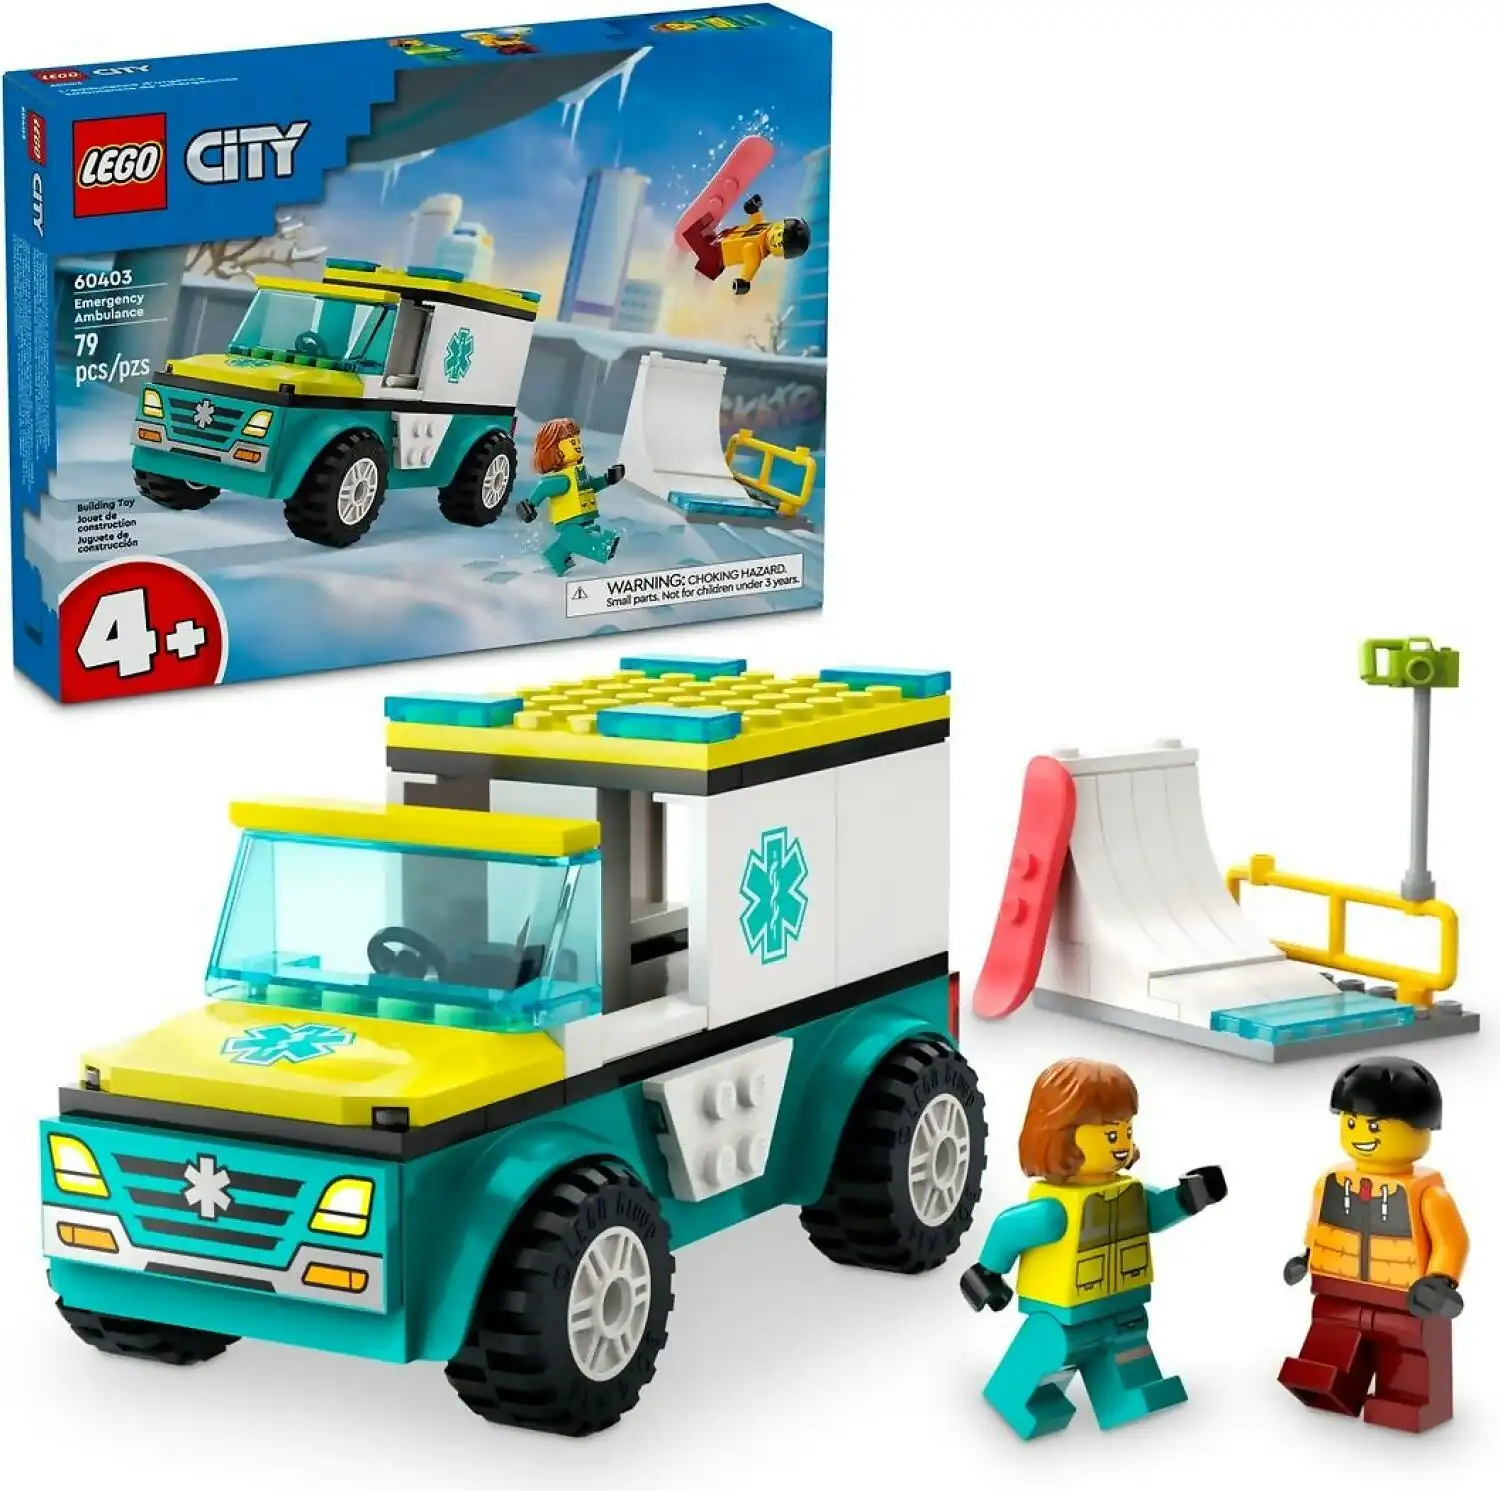 LEGO 60403 Emergency Ambulance and Snowboarder - City 4+